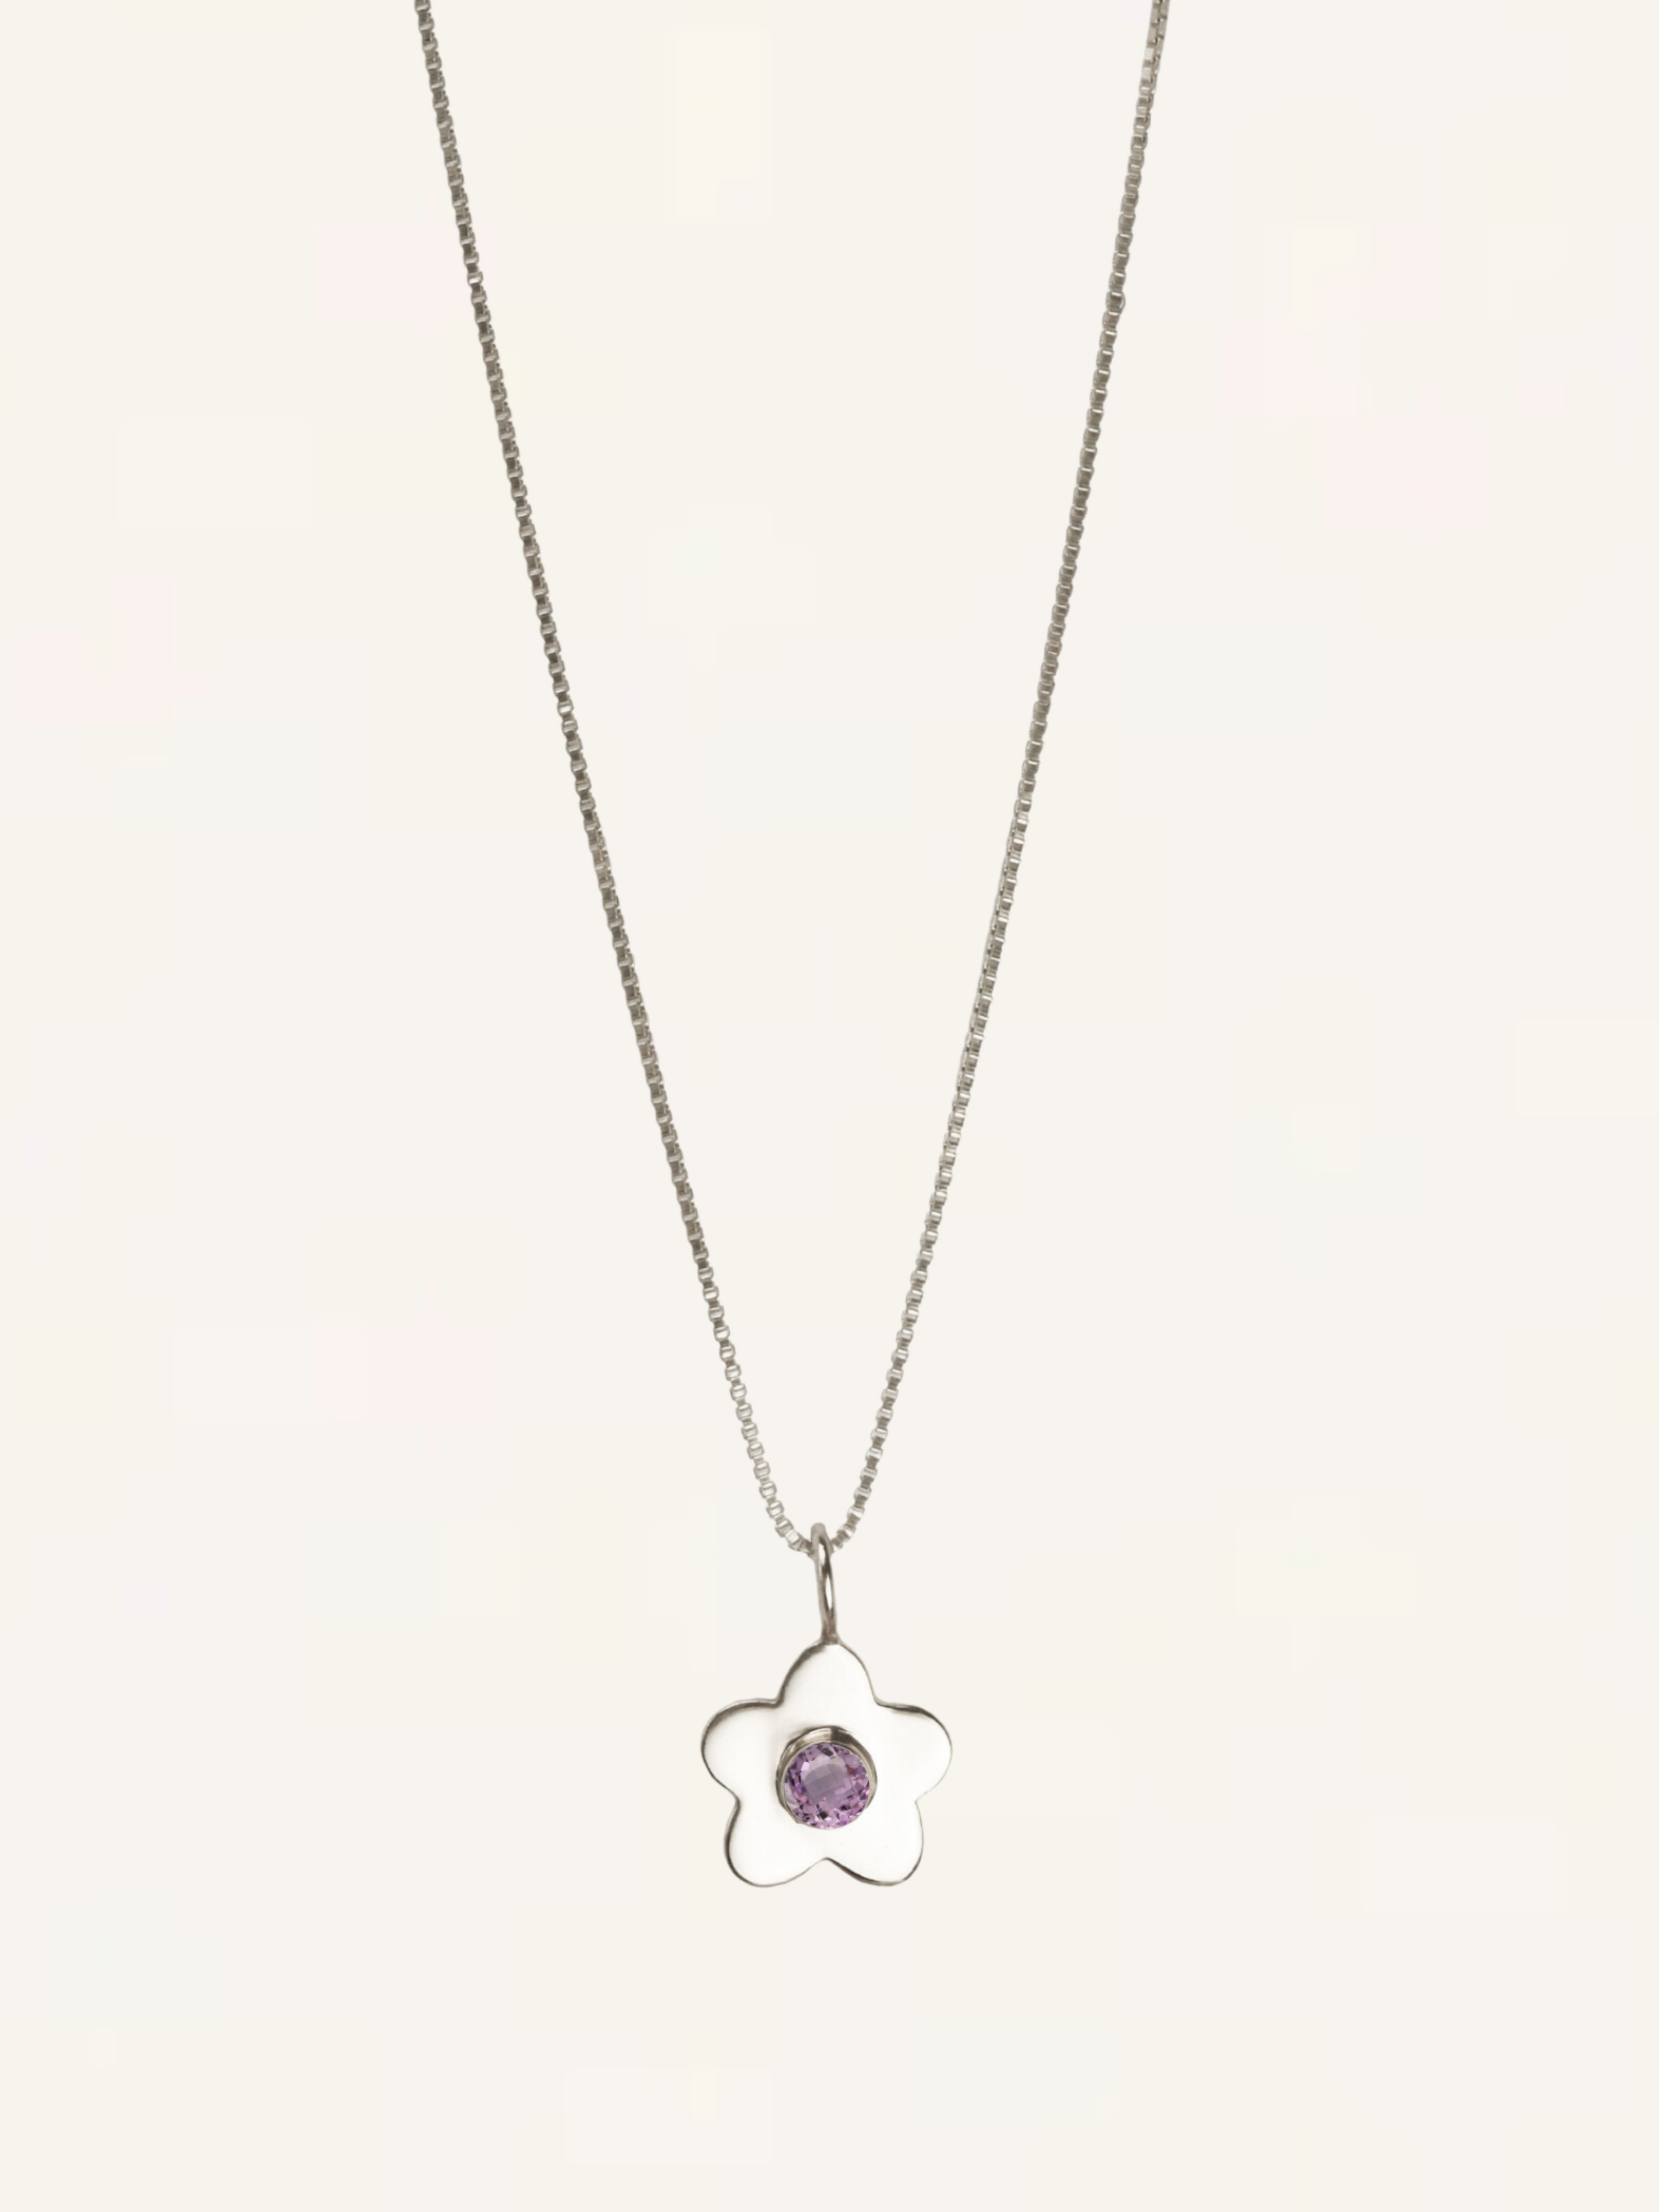 Daisy Gemstone Necklace - Lilac CZ - Silver